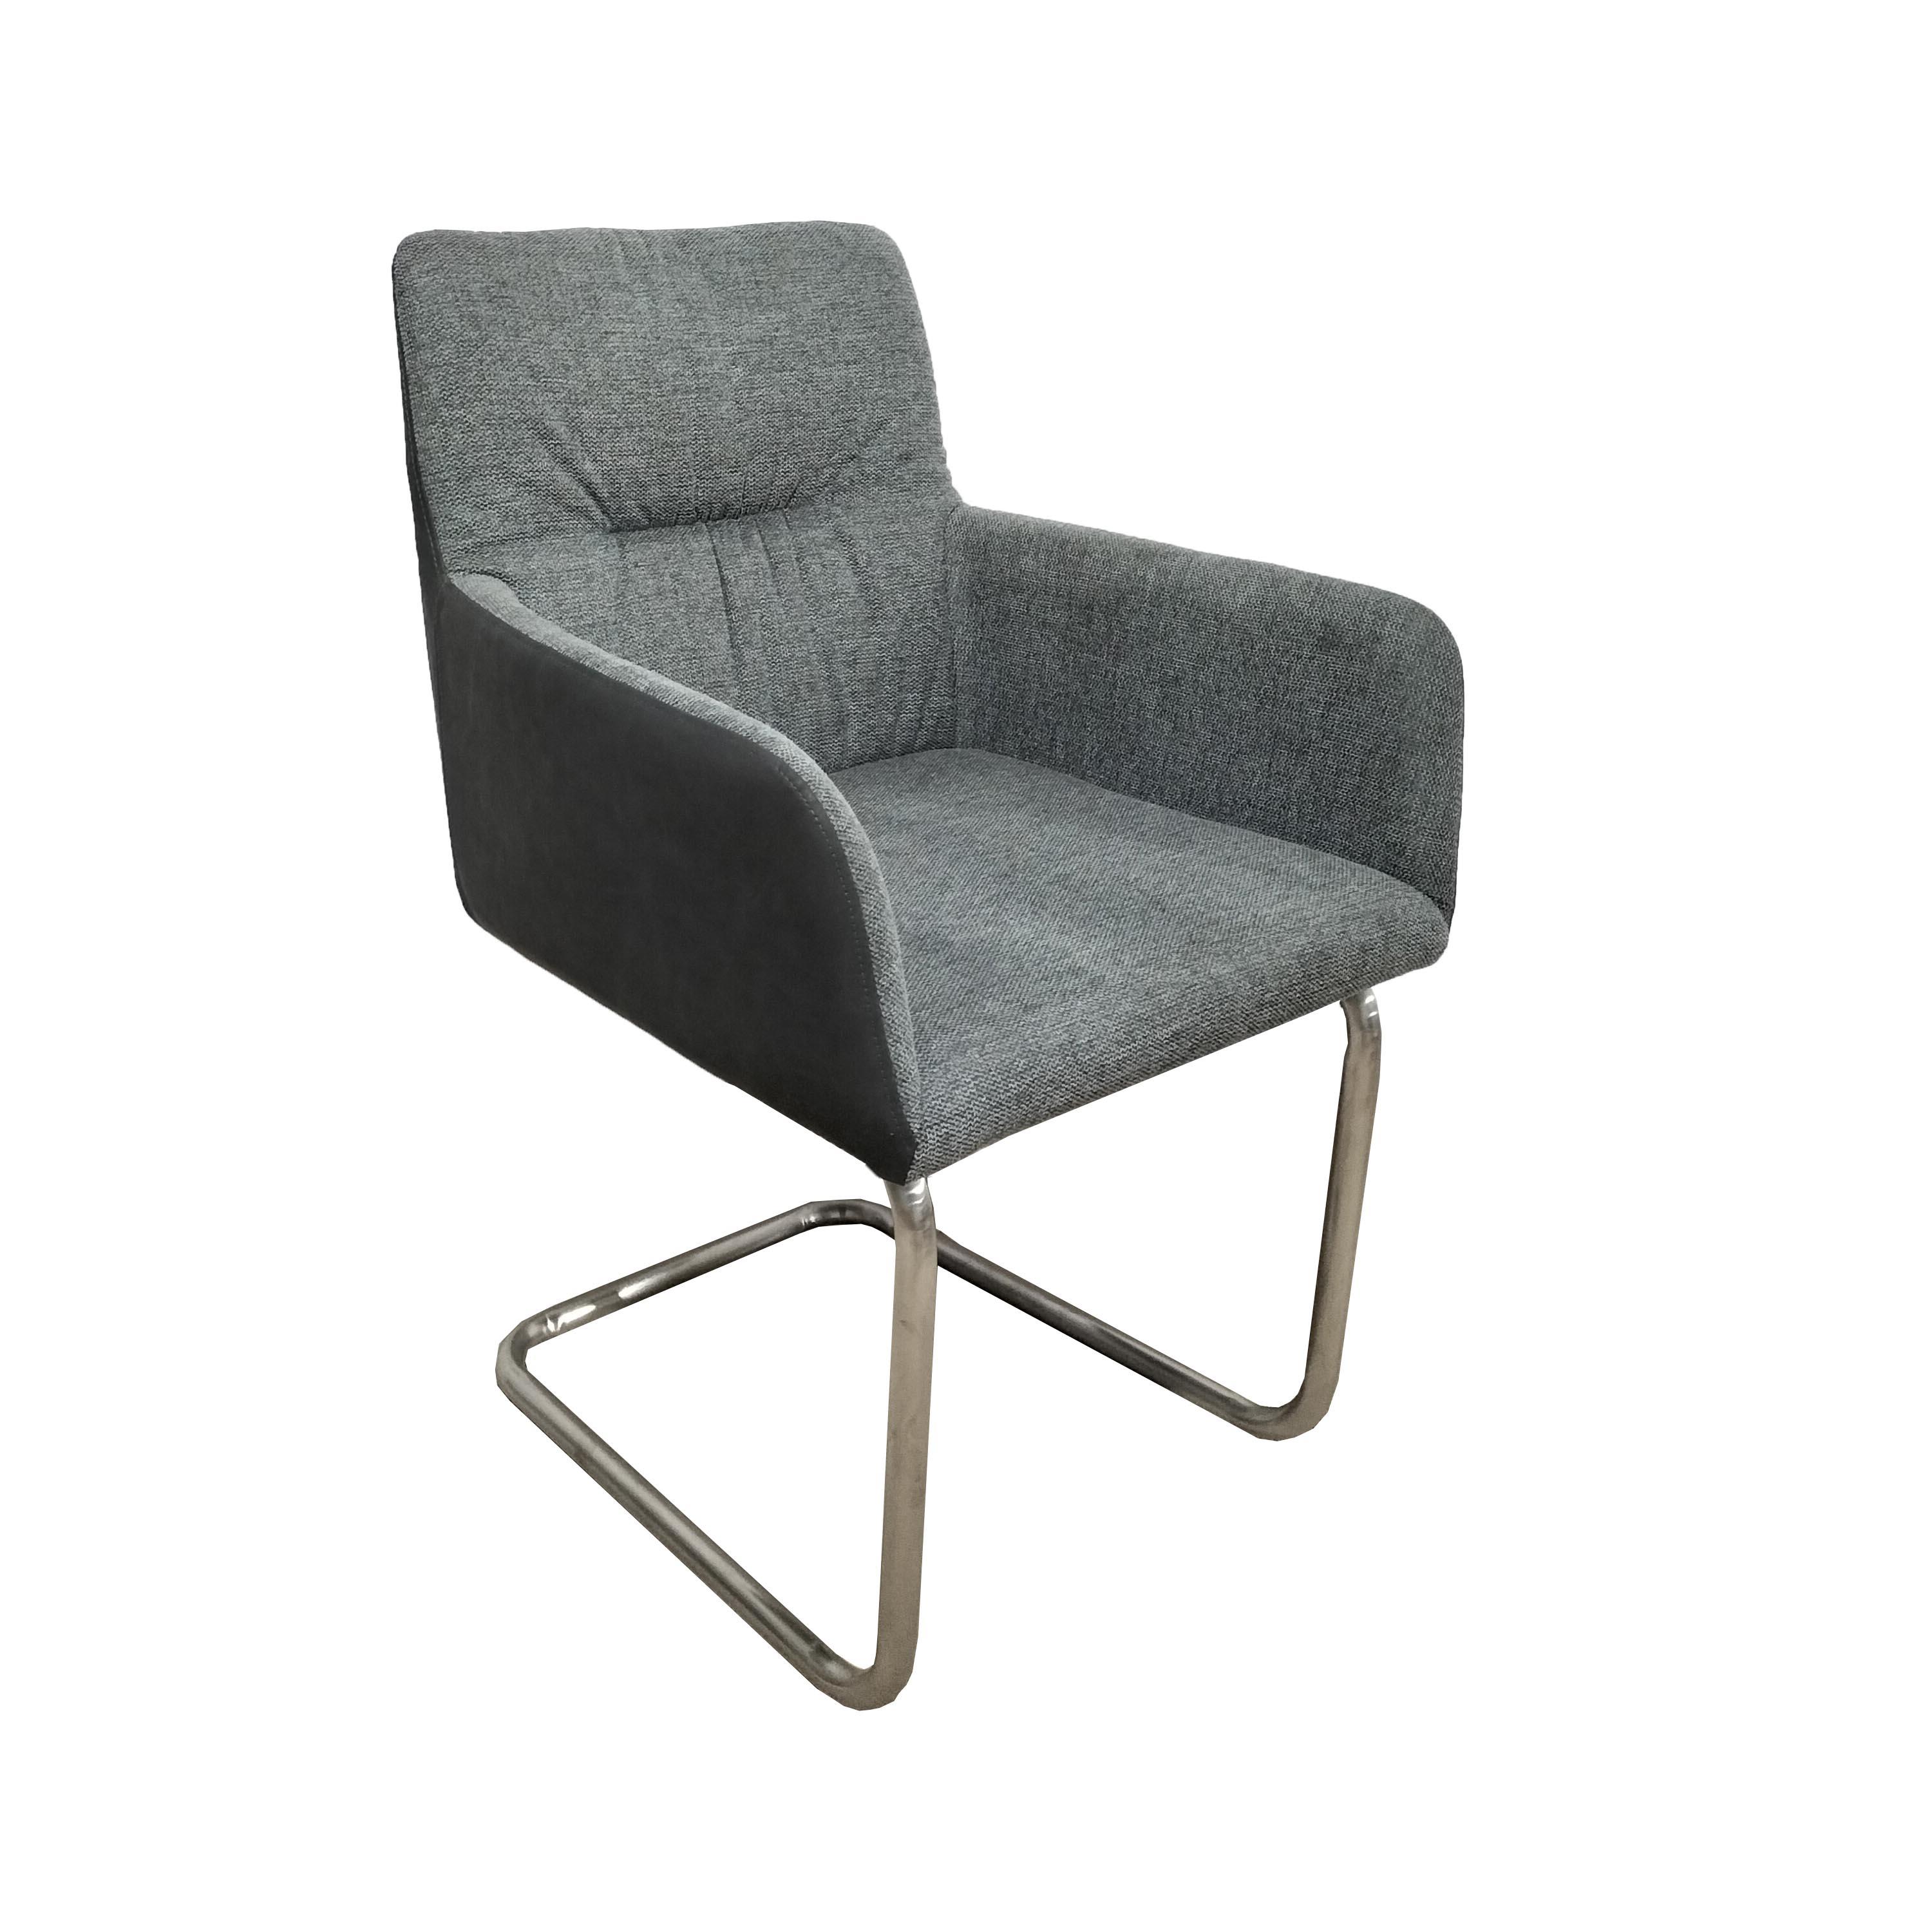 Houpací Židle Enja Světlešedá - šedá/barvy nerez oceli, Moderní, kov/dřevo (58/86/62cm) - Bessagi Home